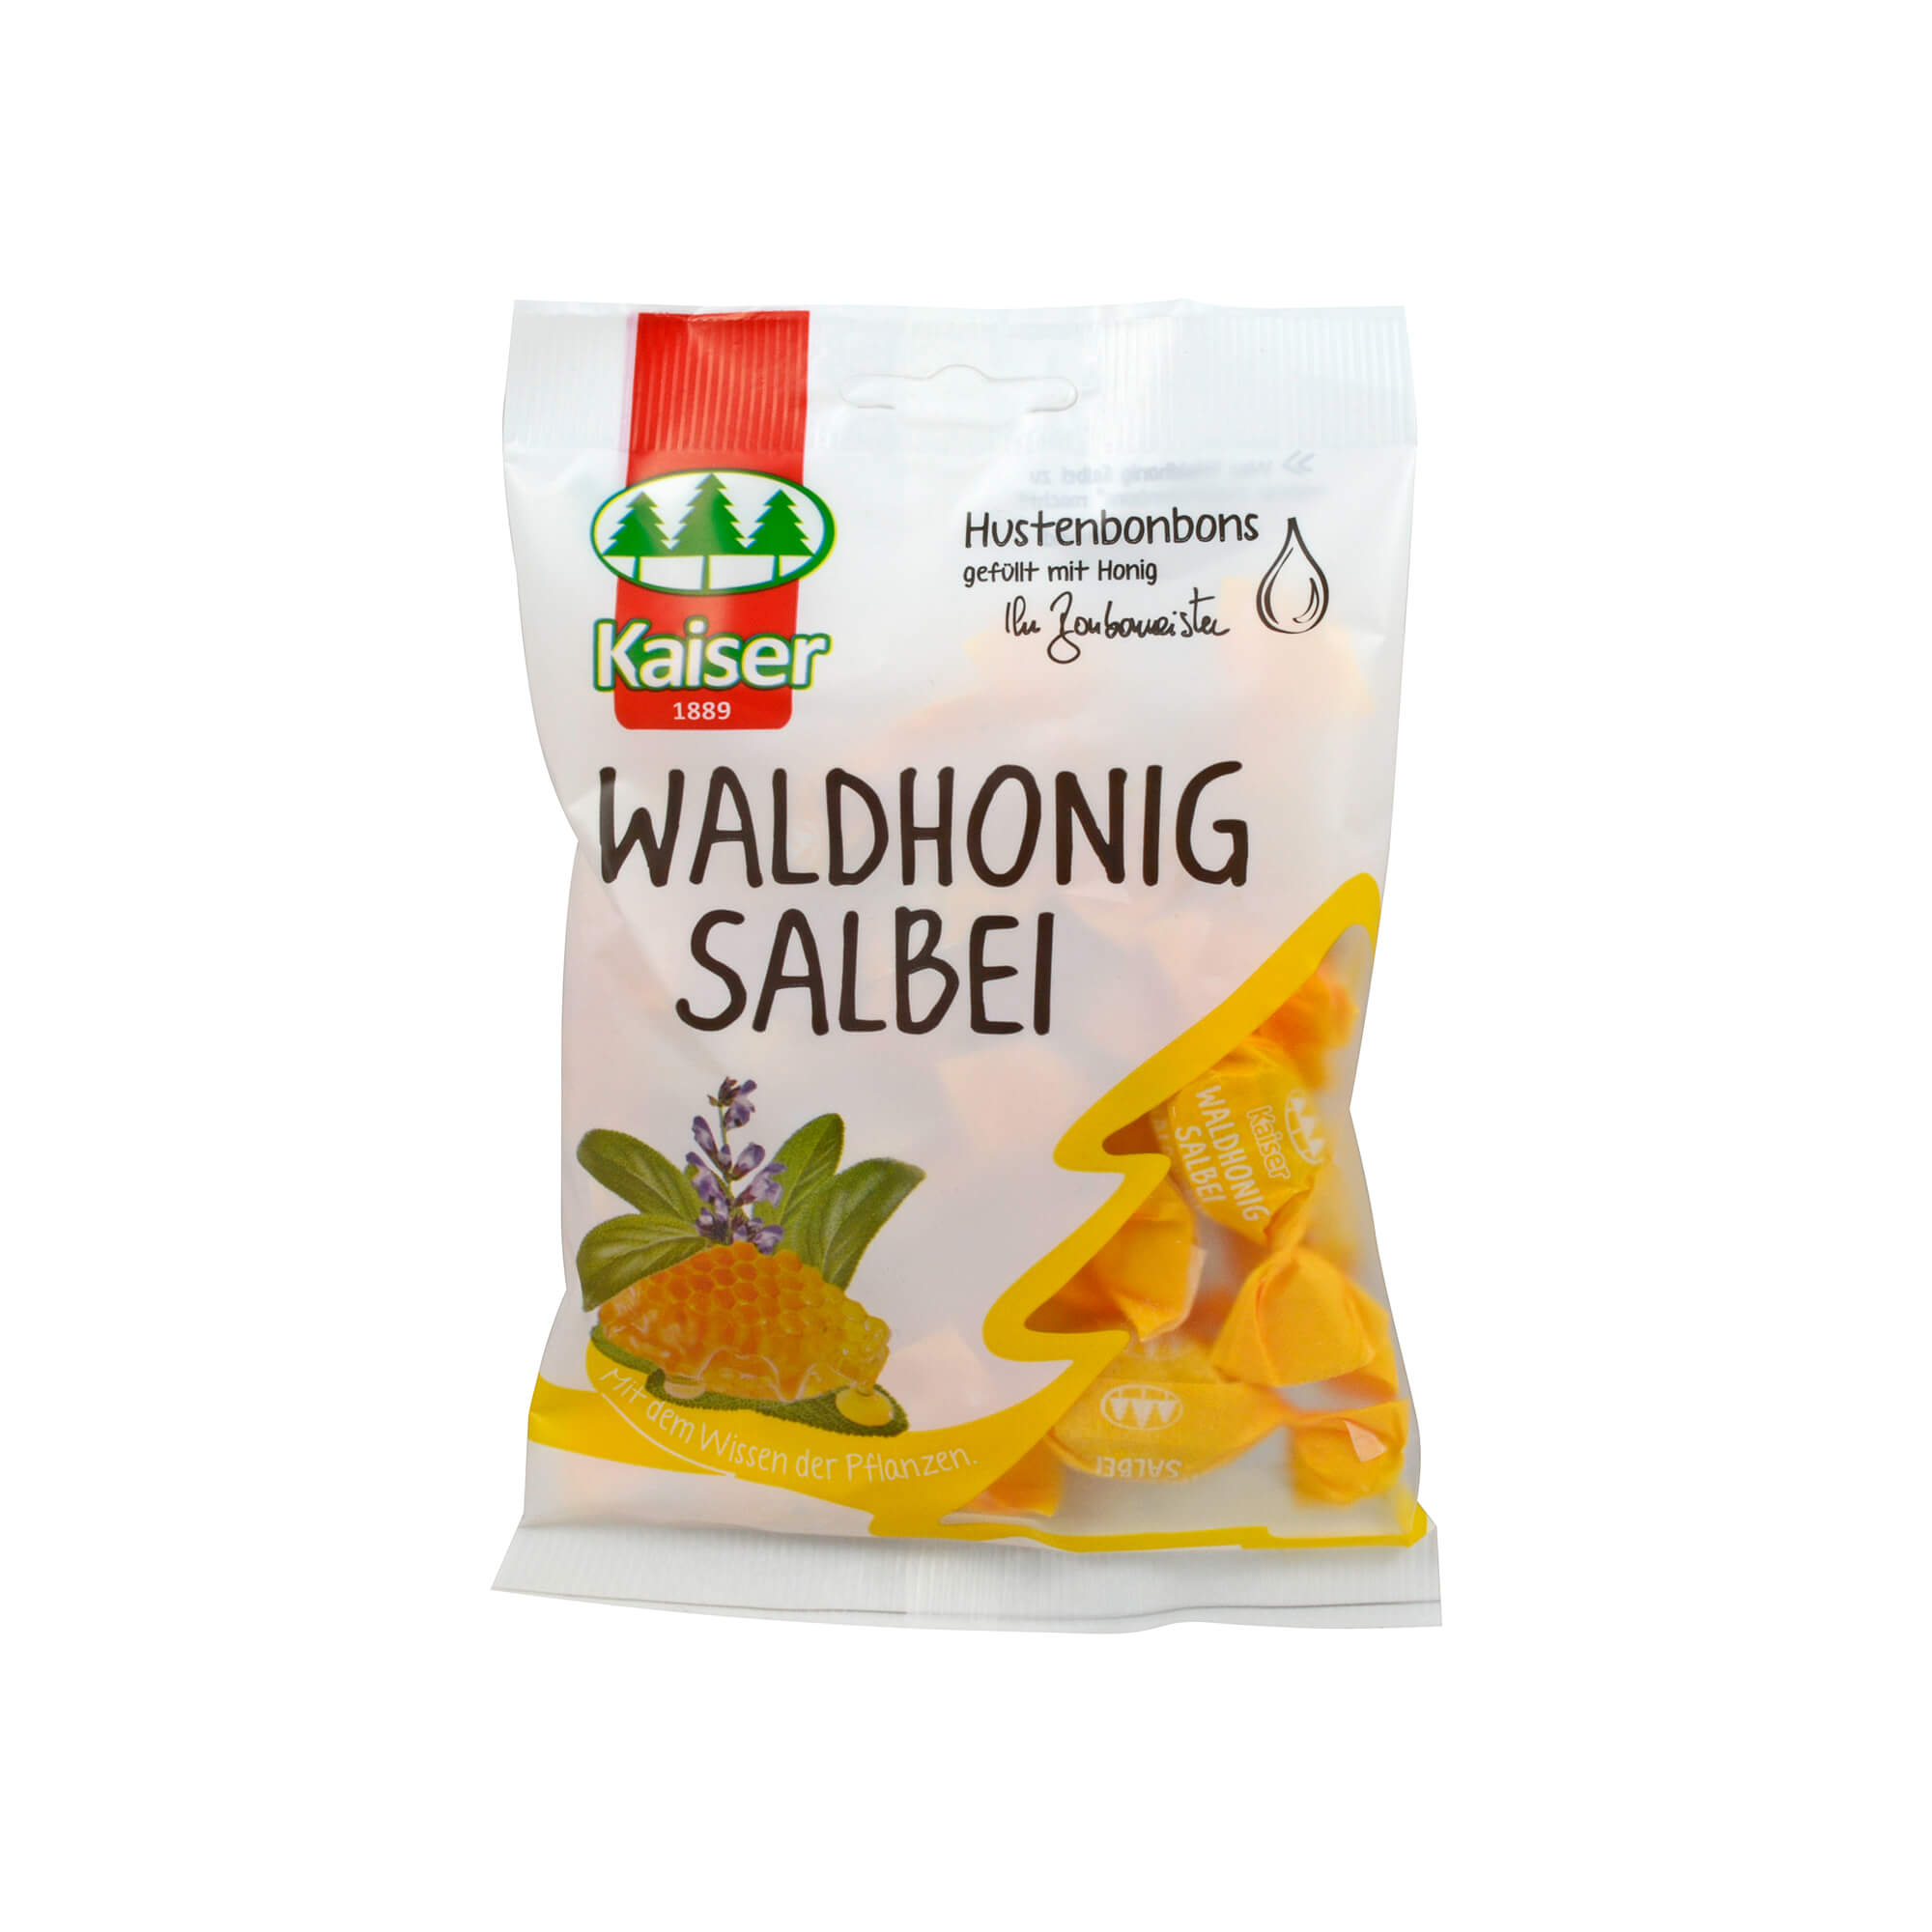 Kaiser Waldhonig Salbei Hustenbonbons.